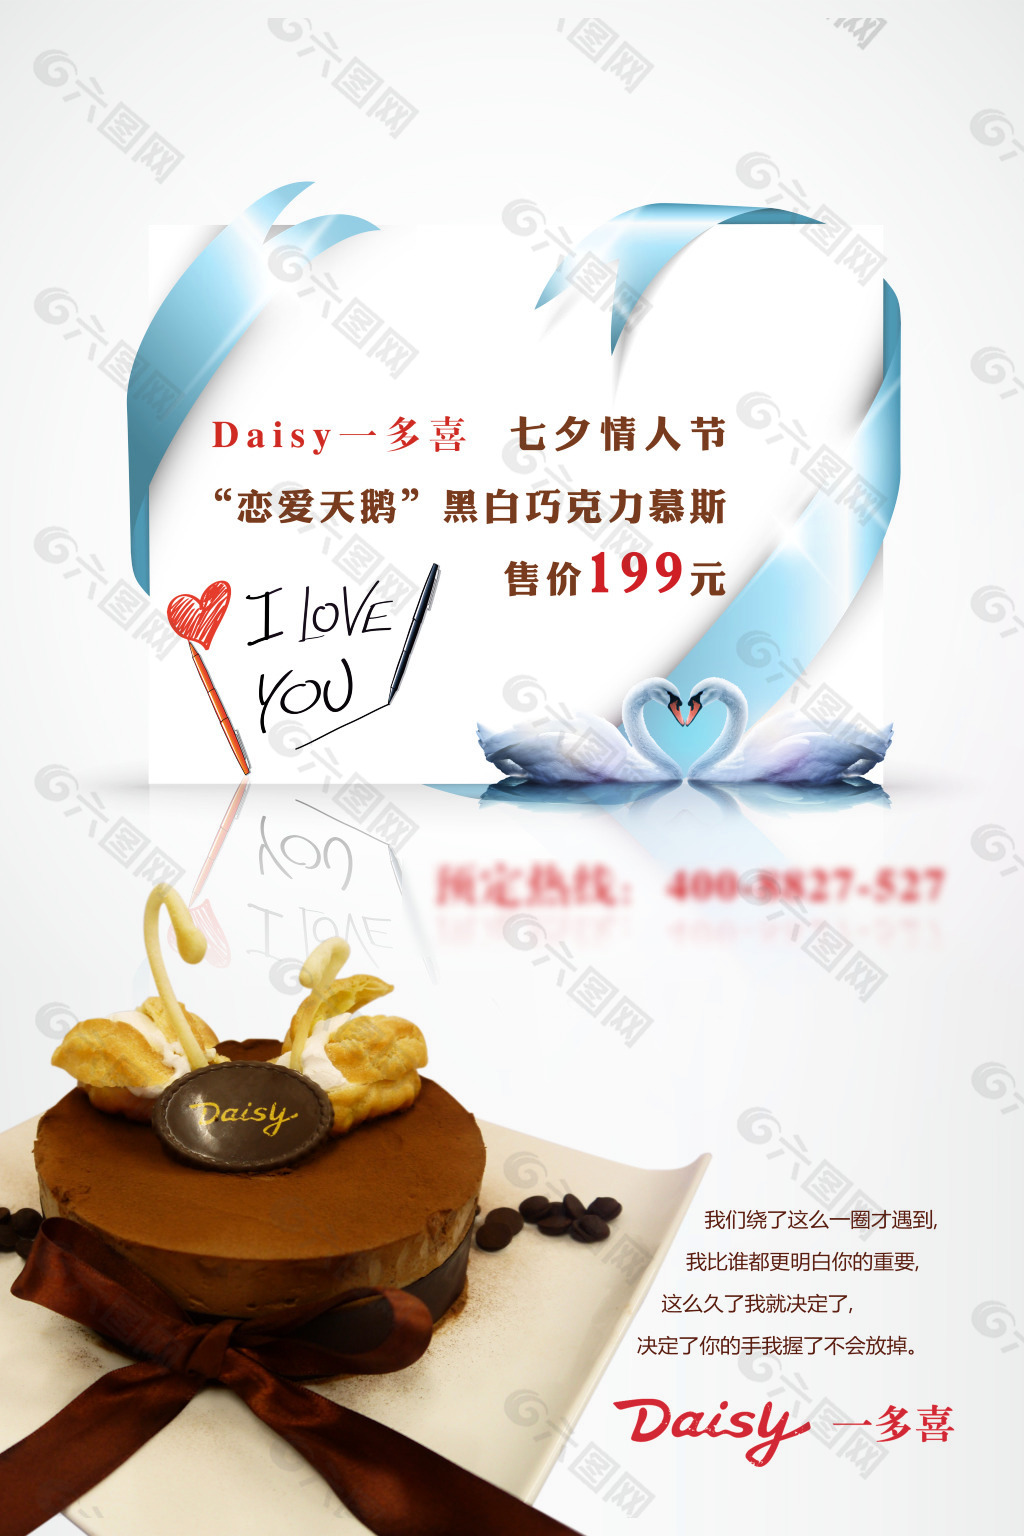 七夕情人节蛋糕店平面海报设计 蛋糕店海报